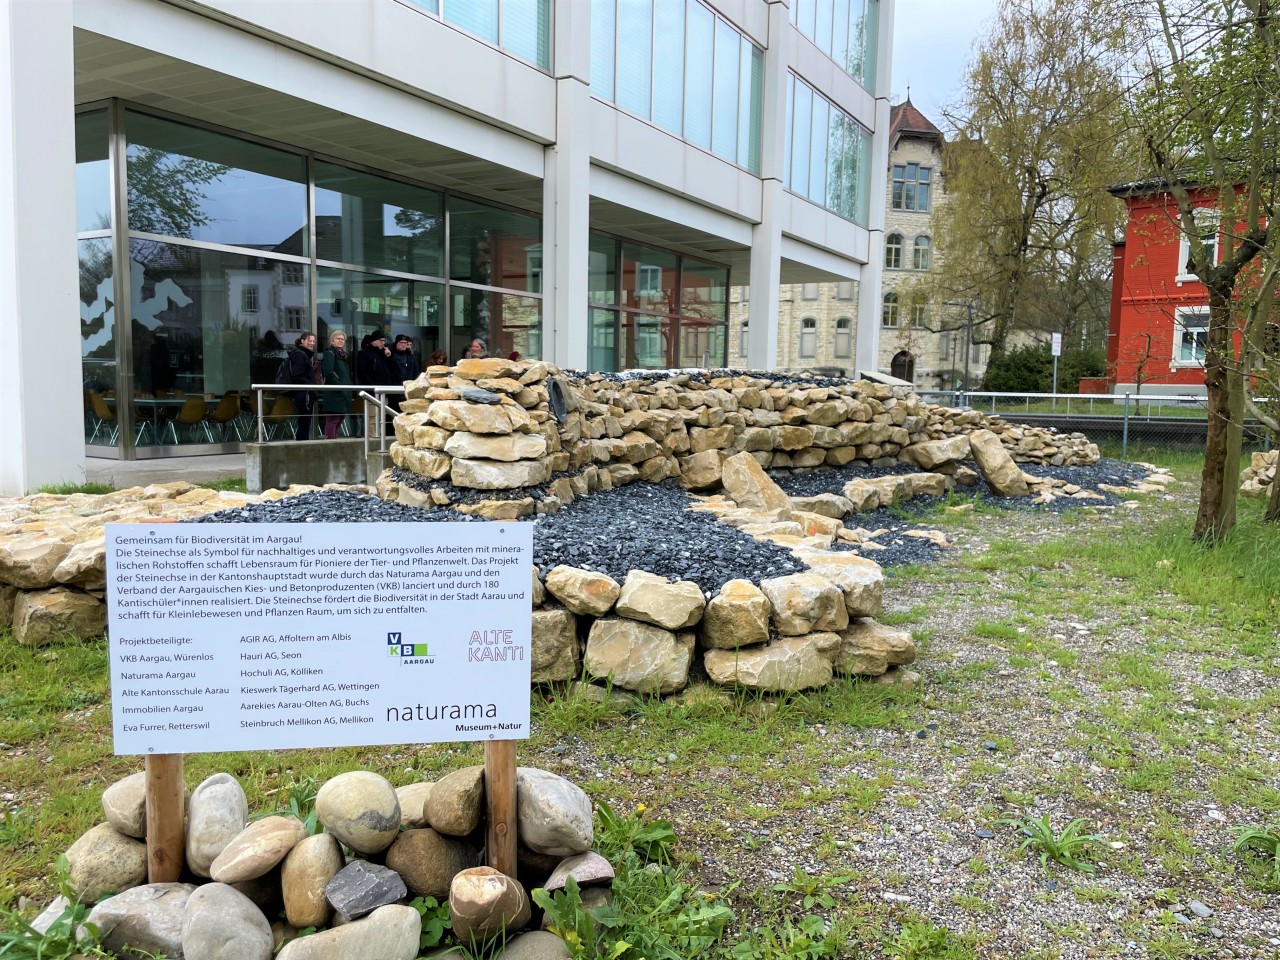 Vor dem Naturama, Schild weist auf Biodiversität im Aargau hin